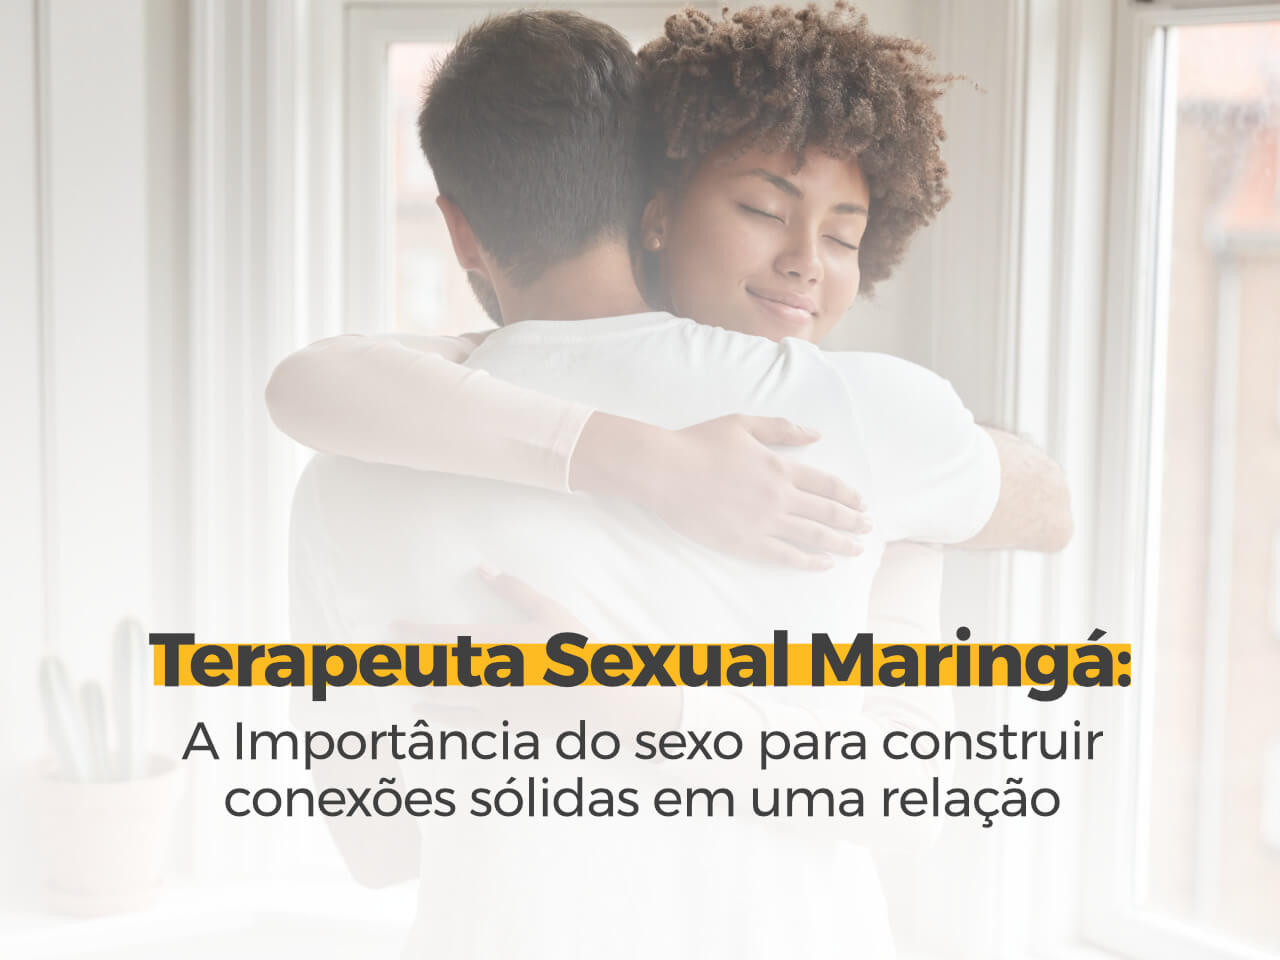 Terapeuta Sexual Maringá: A Importância do Sexo para Construir Conexões Sólidas em Uma Relação